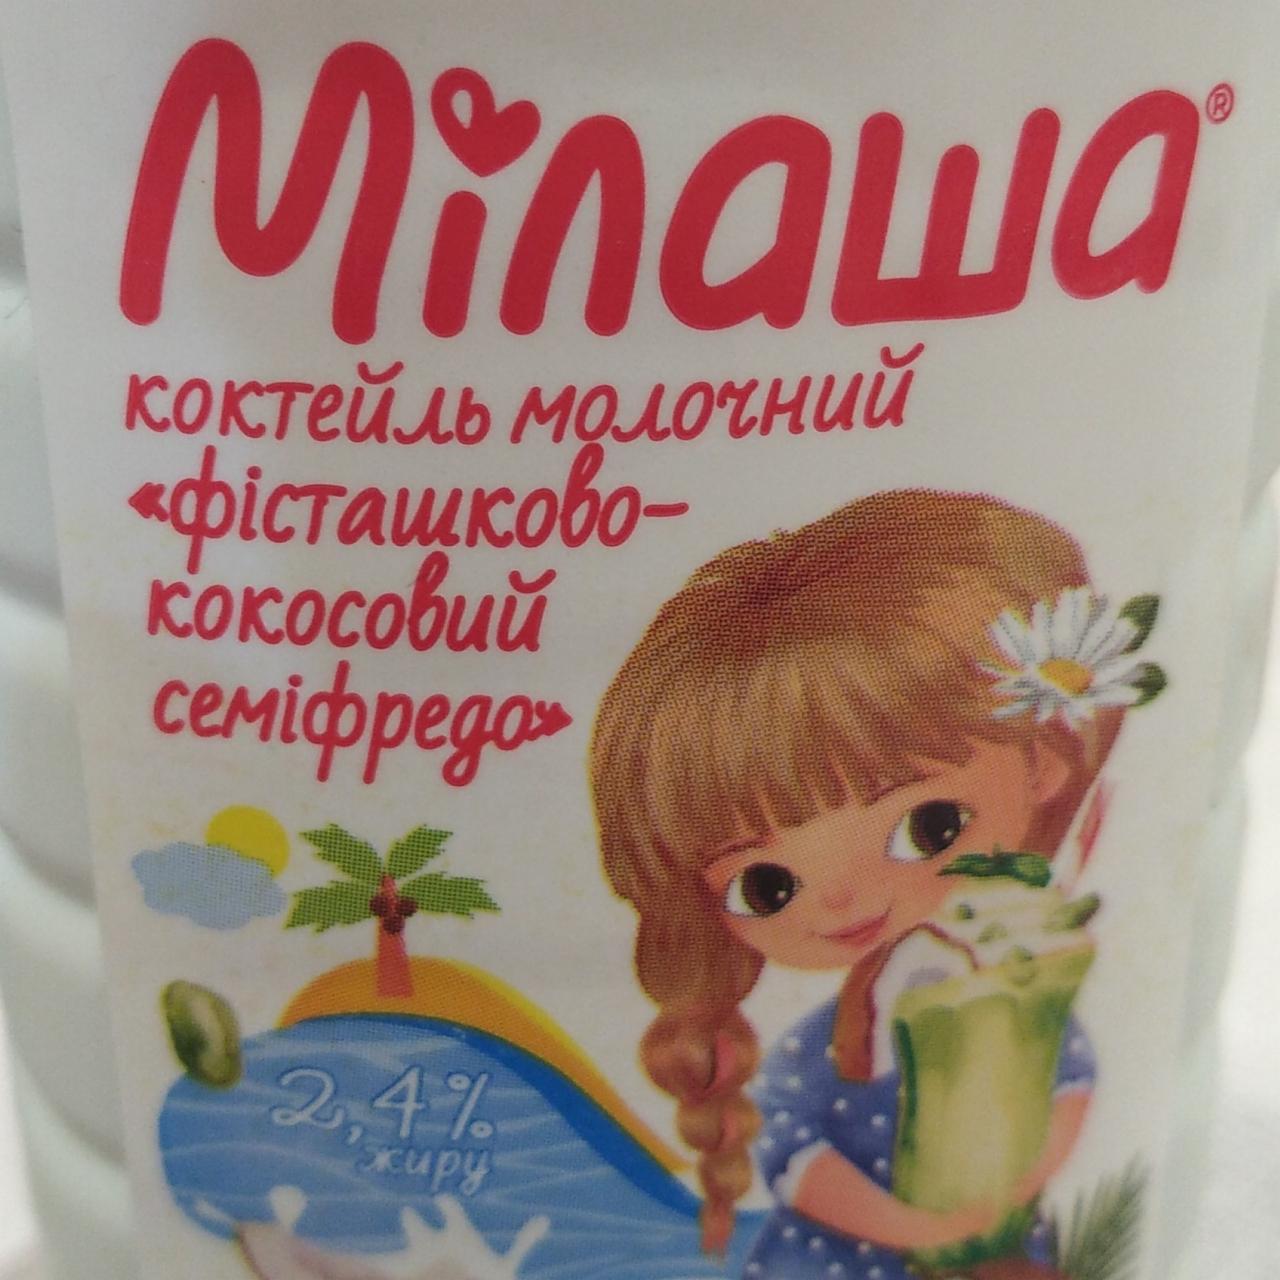 Фото - Коктейль молочный Фисташко-Кокосовый 2,4% Милаша